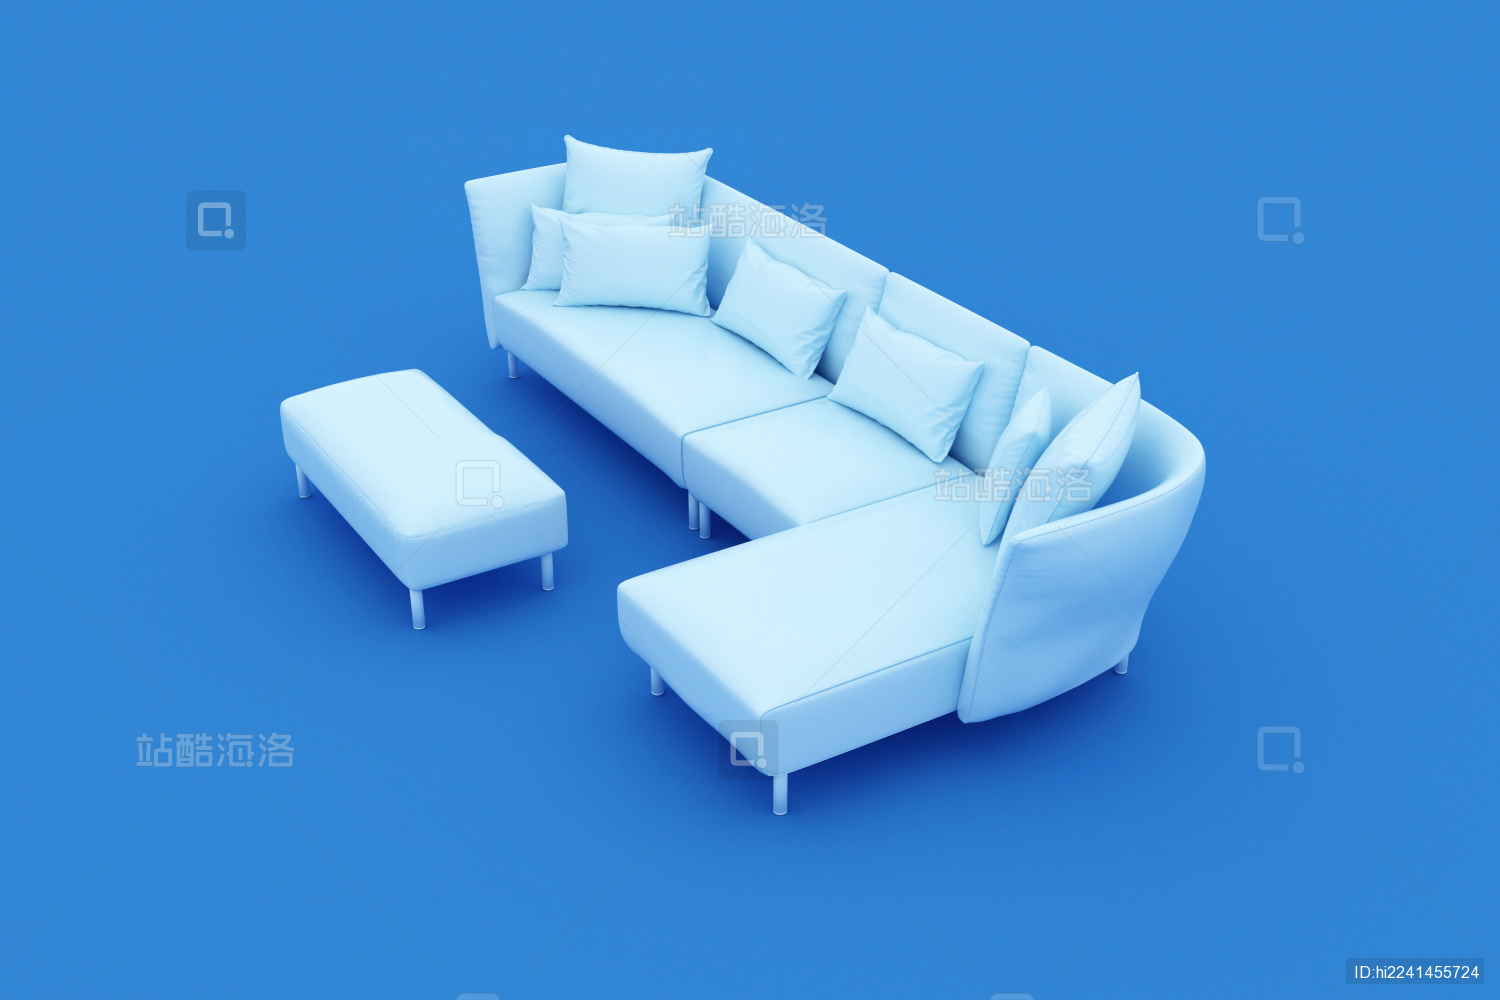 高清晰蓝色背景素材|网页设计师联盟素材